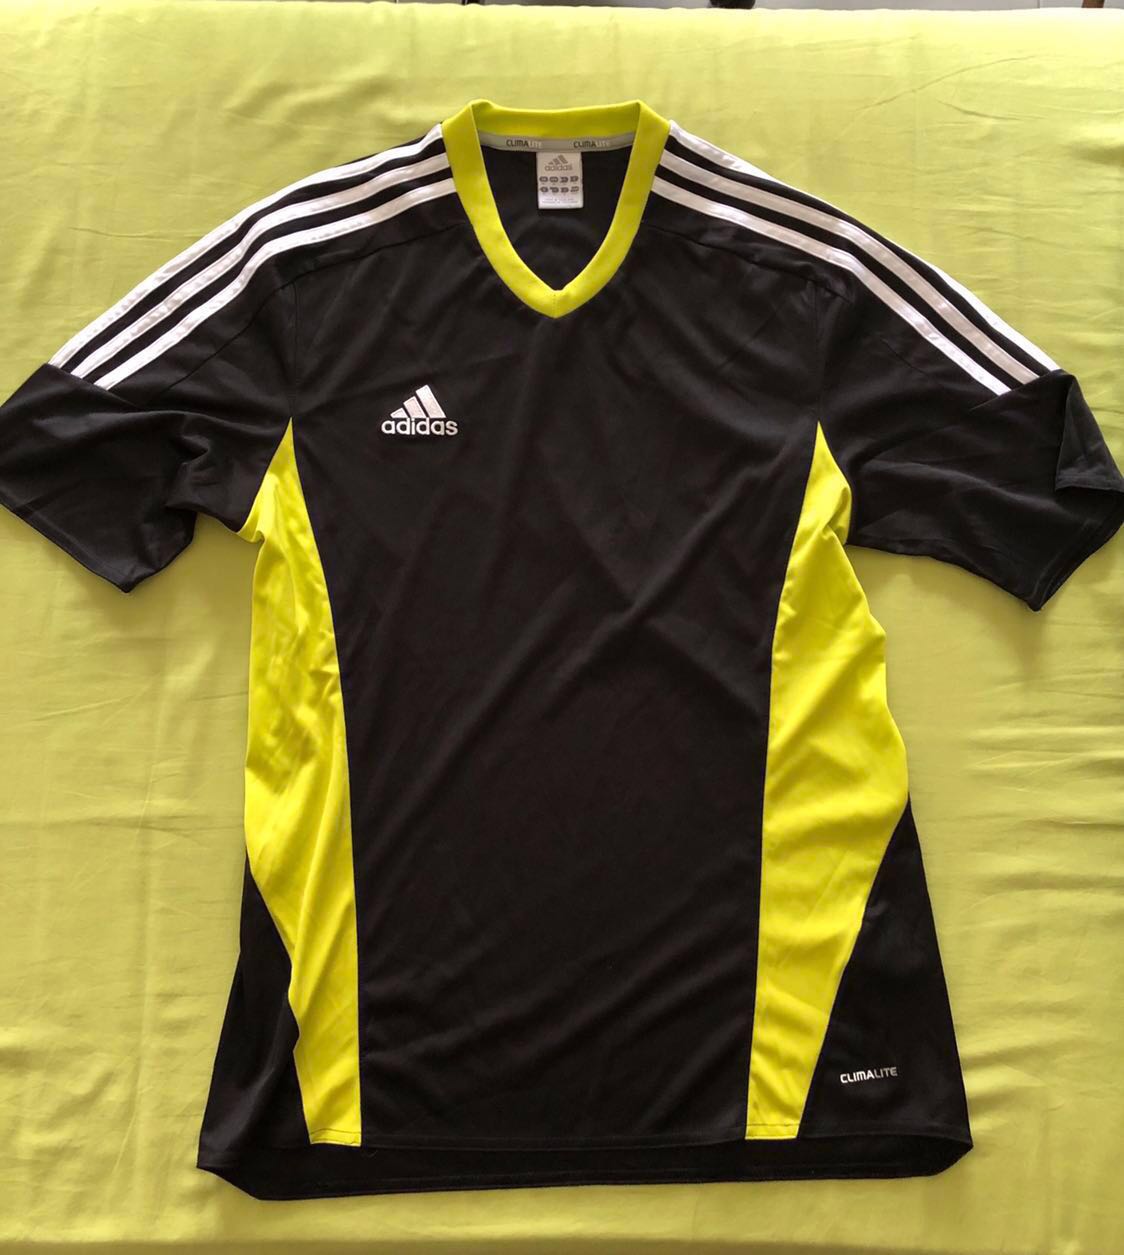 black and yellow adidas shirt